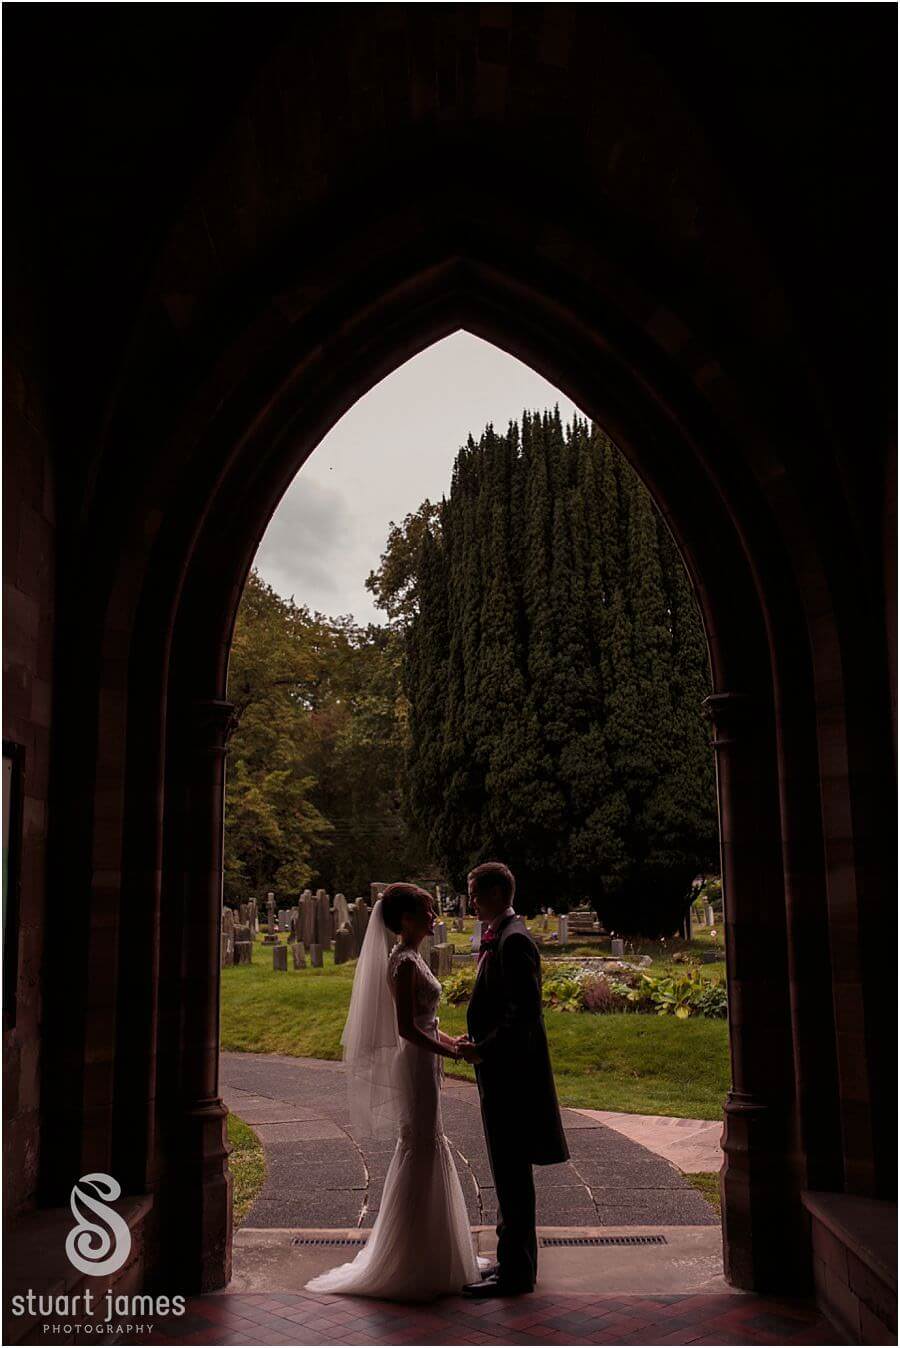 Storytelling wedding photography at Eccleshall Church near Stafford by Eccleshall Wedding Photographer Stuart James